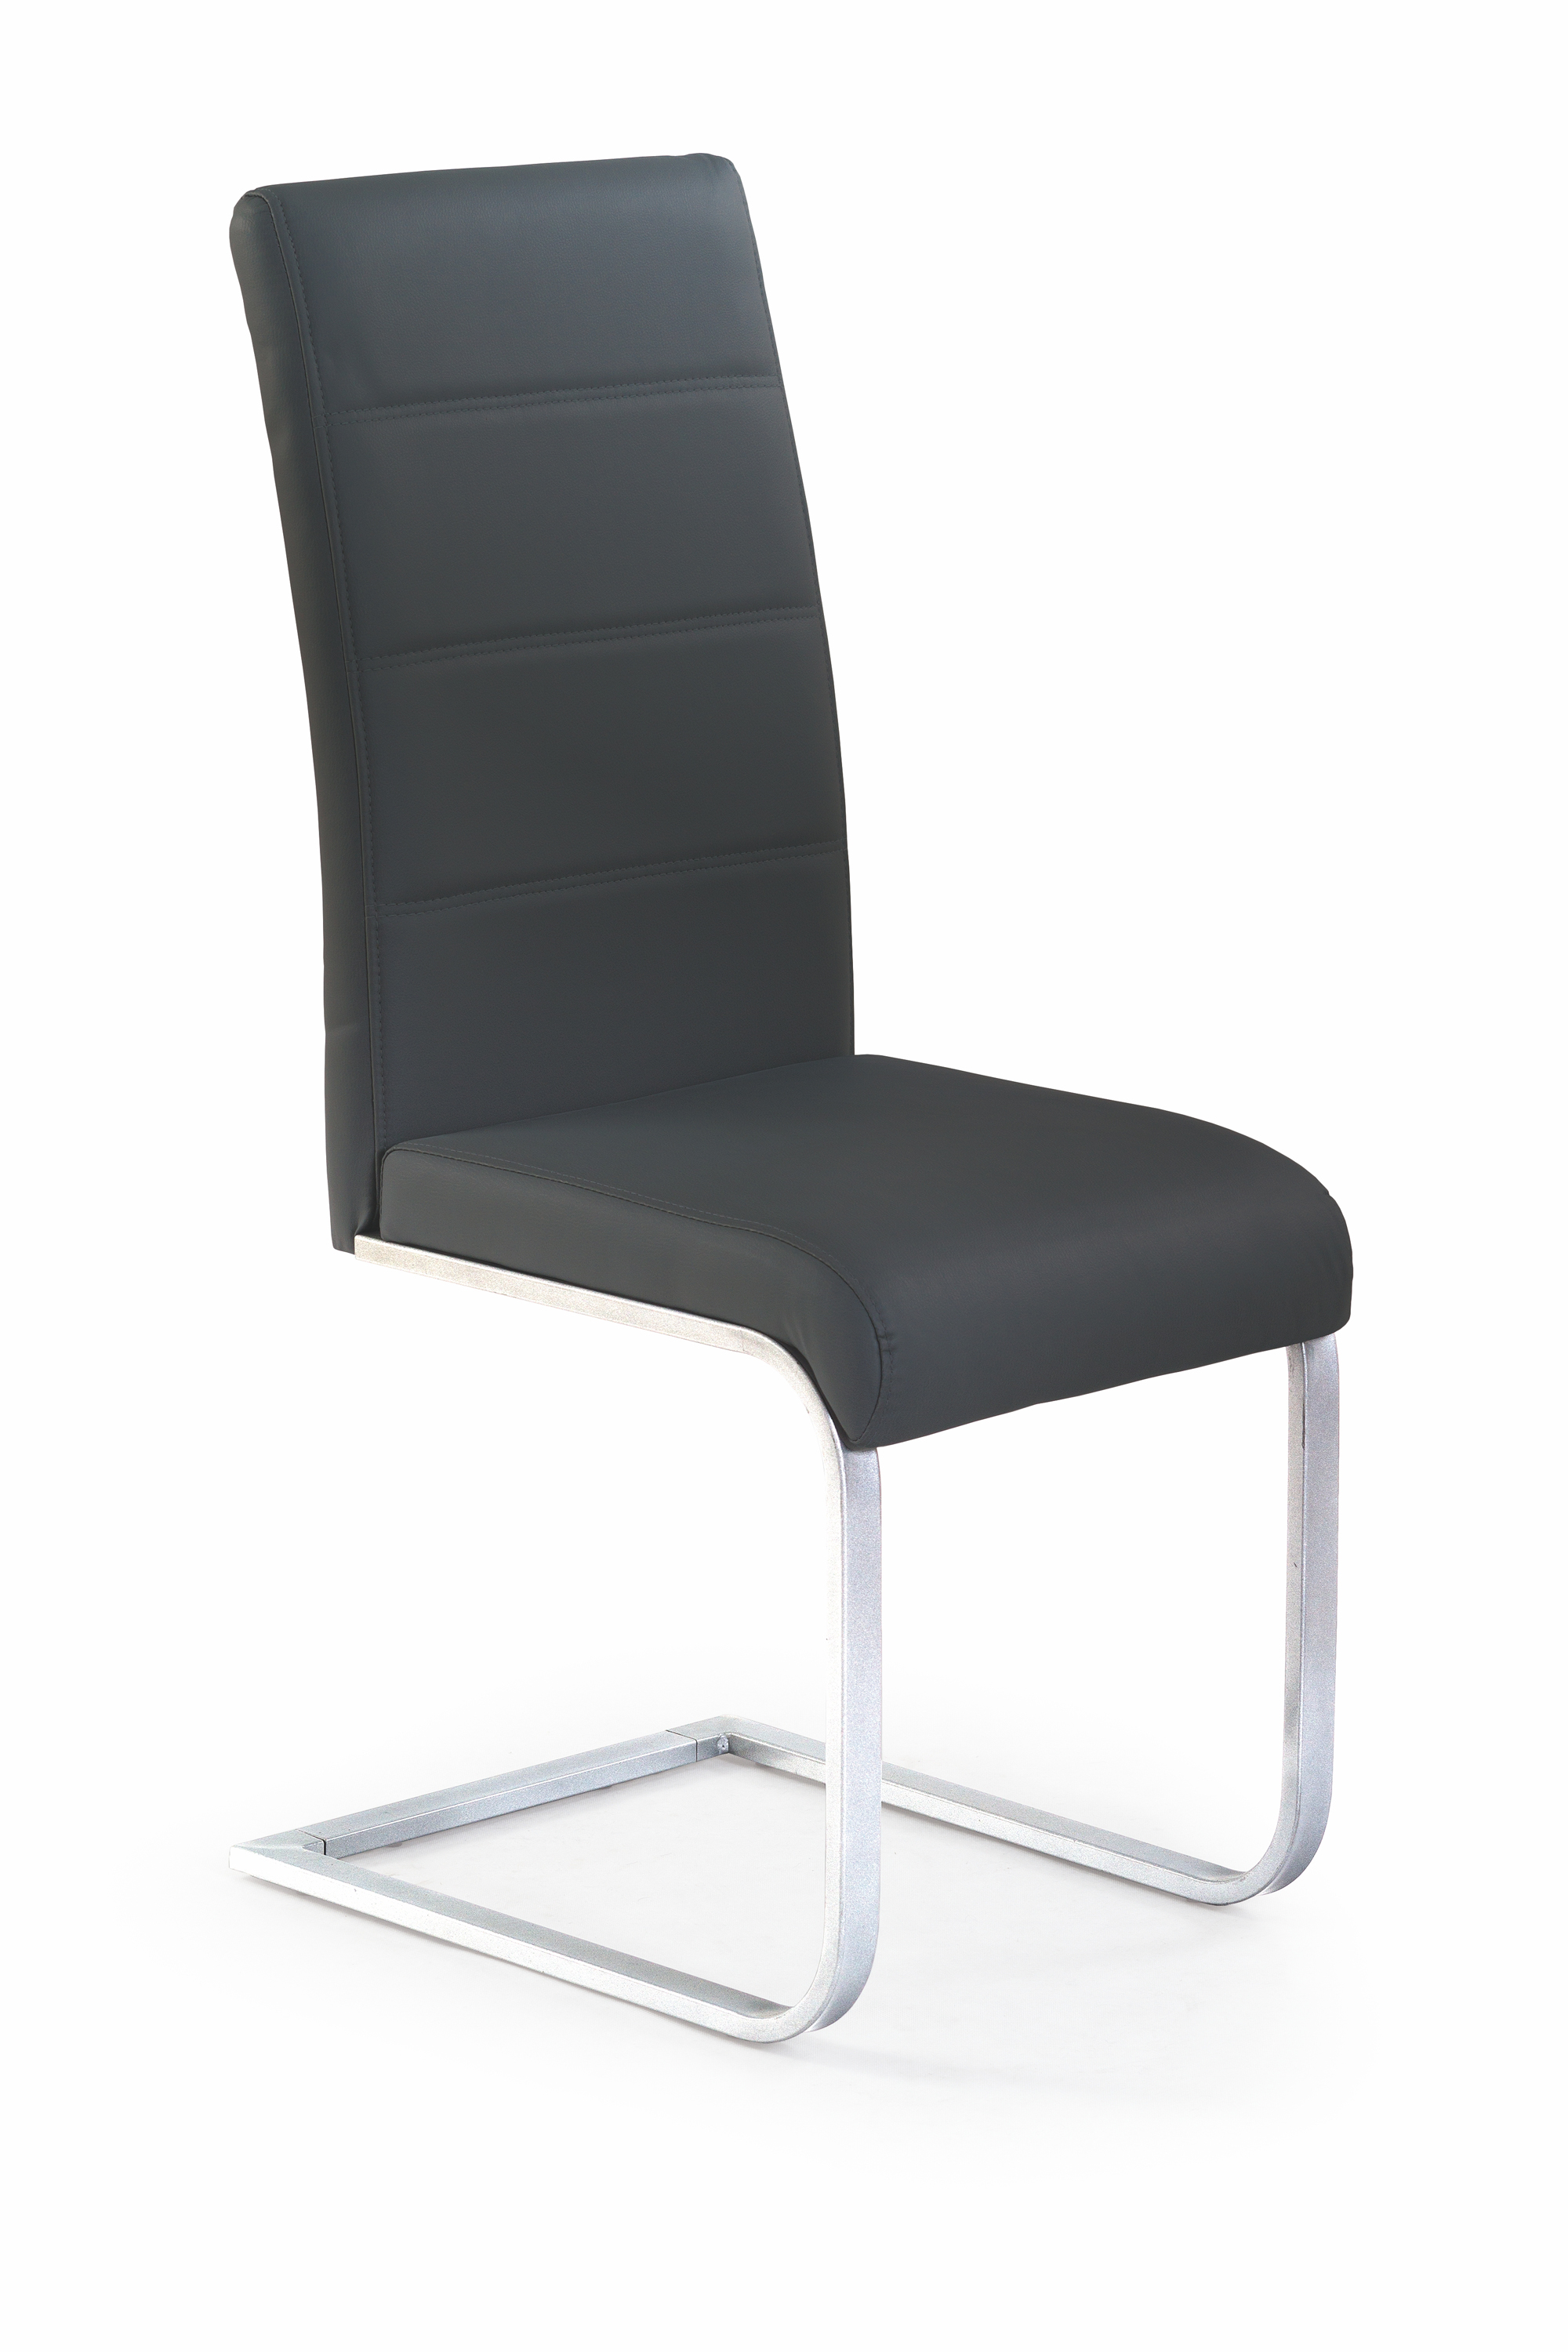 Židle K85 - Černá Židle k85 - Černý